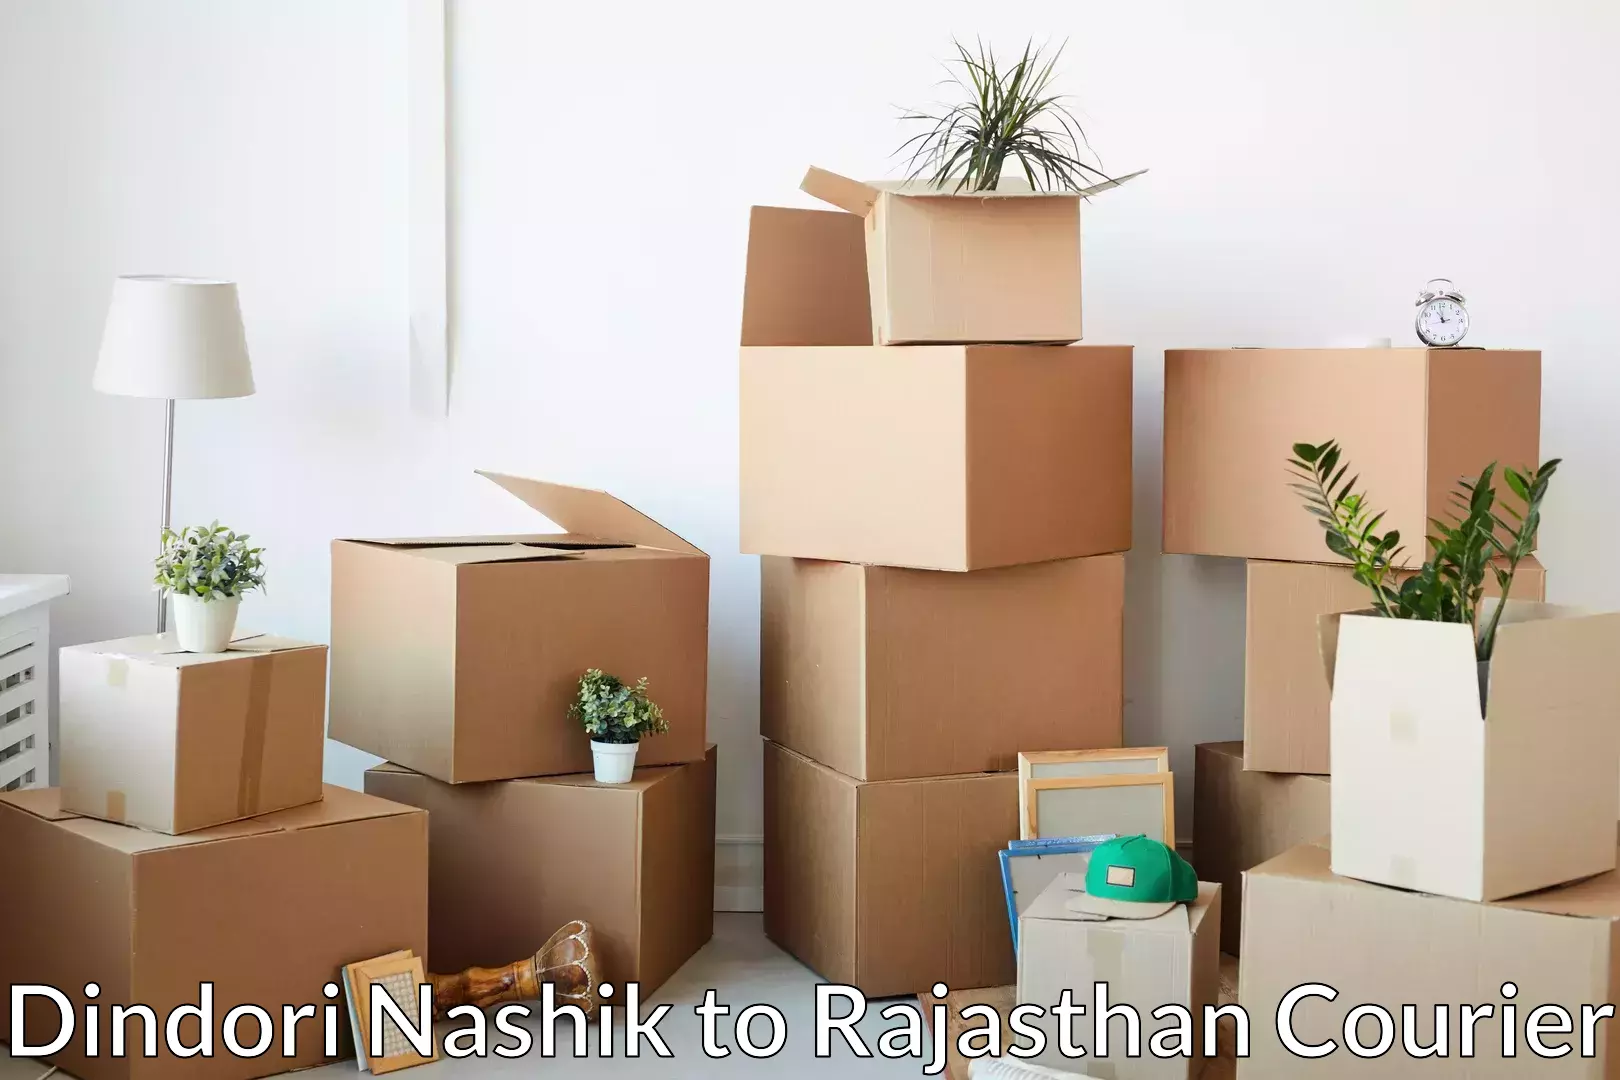 Household moving experts Dindori Nashik to Parbatsar